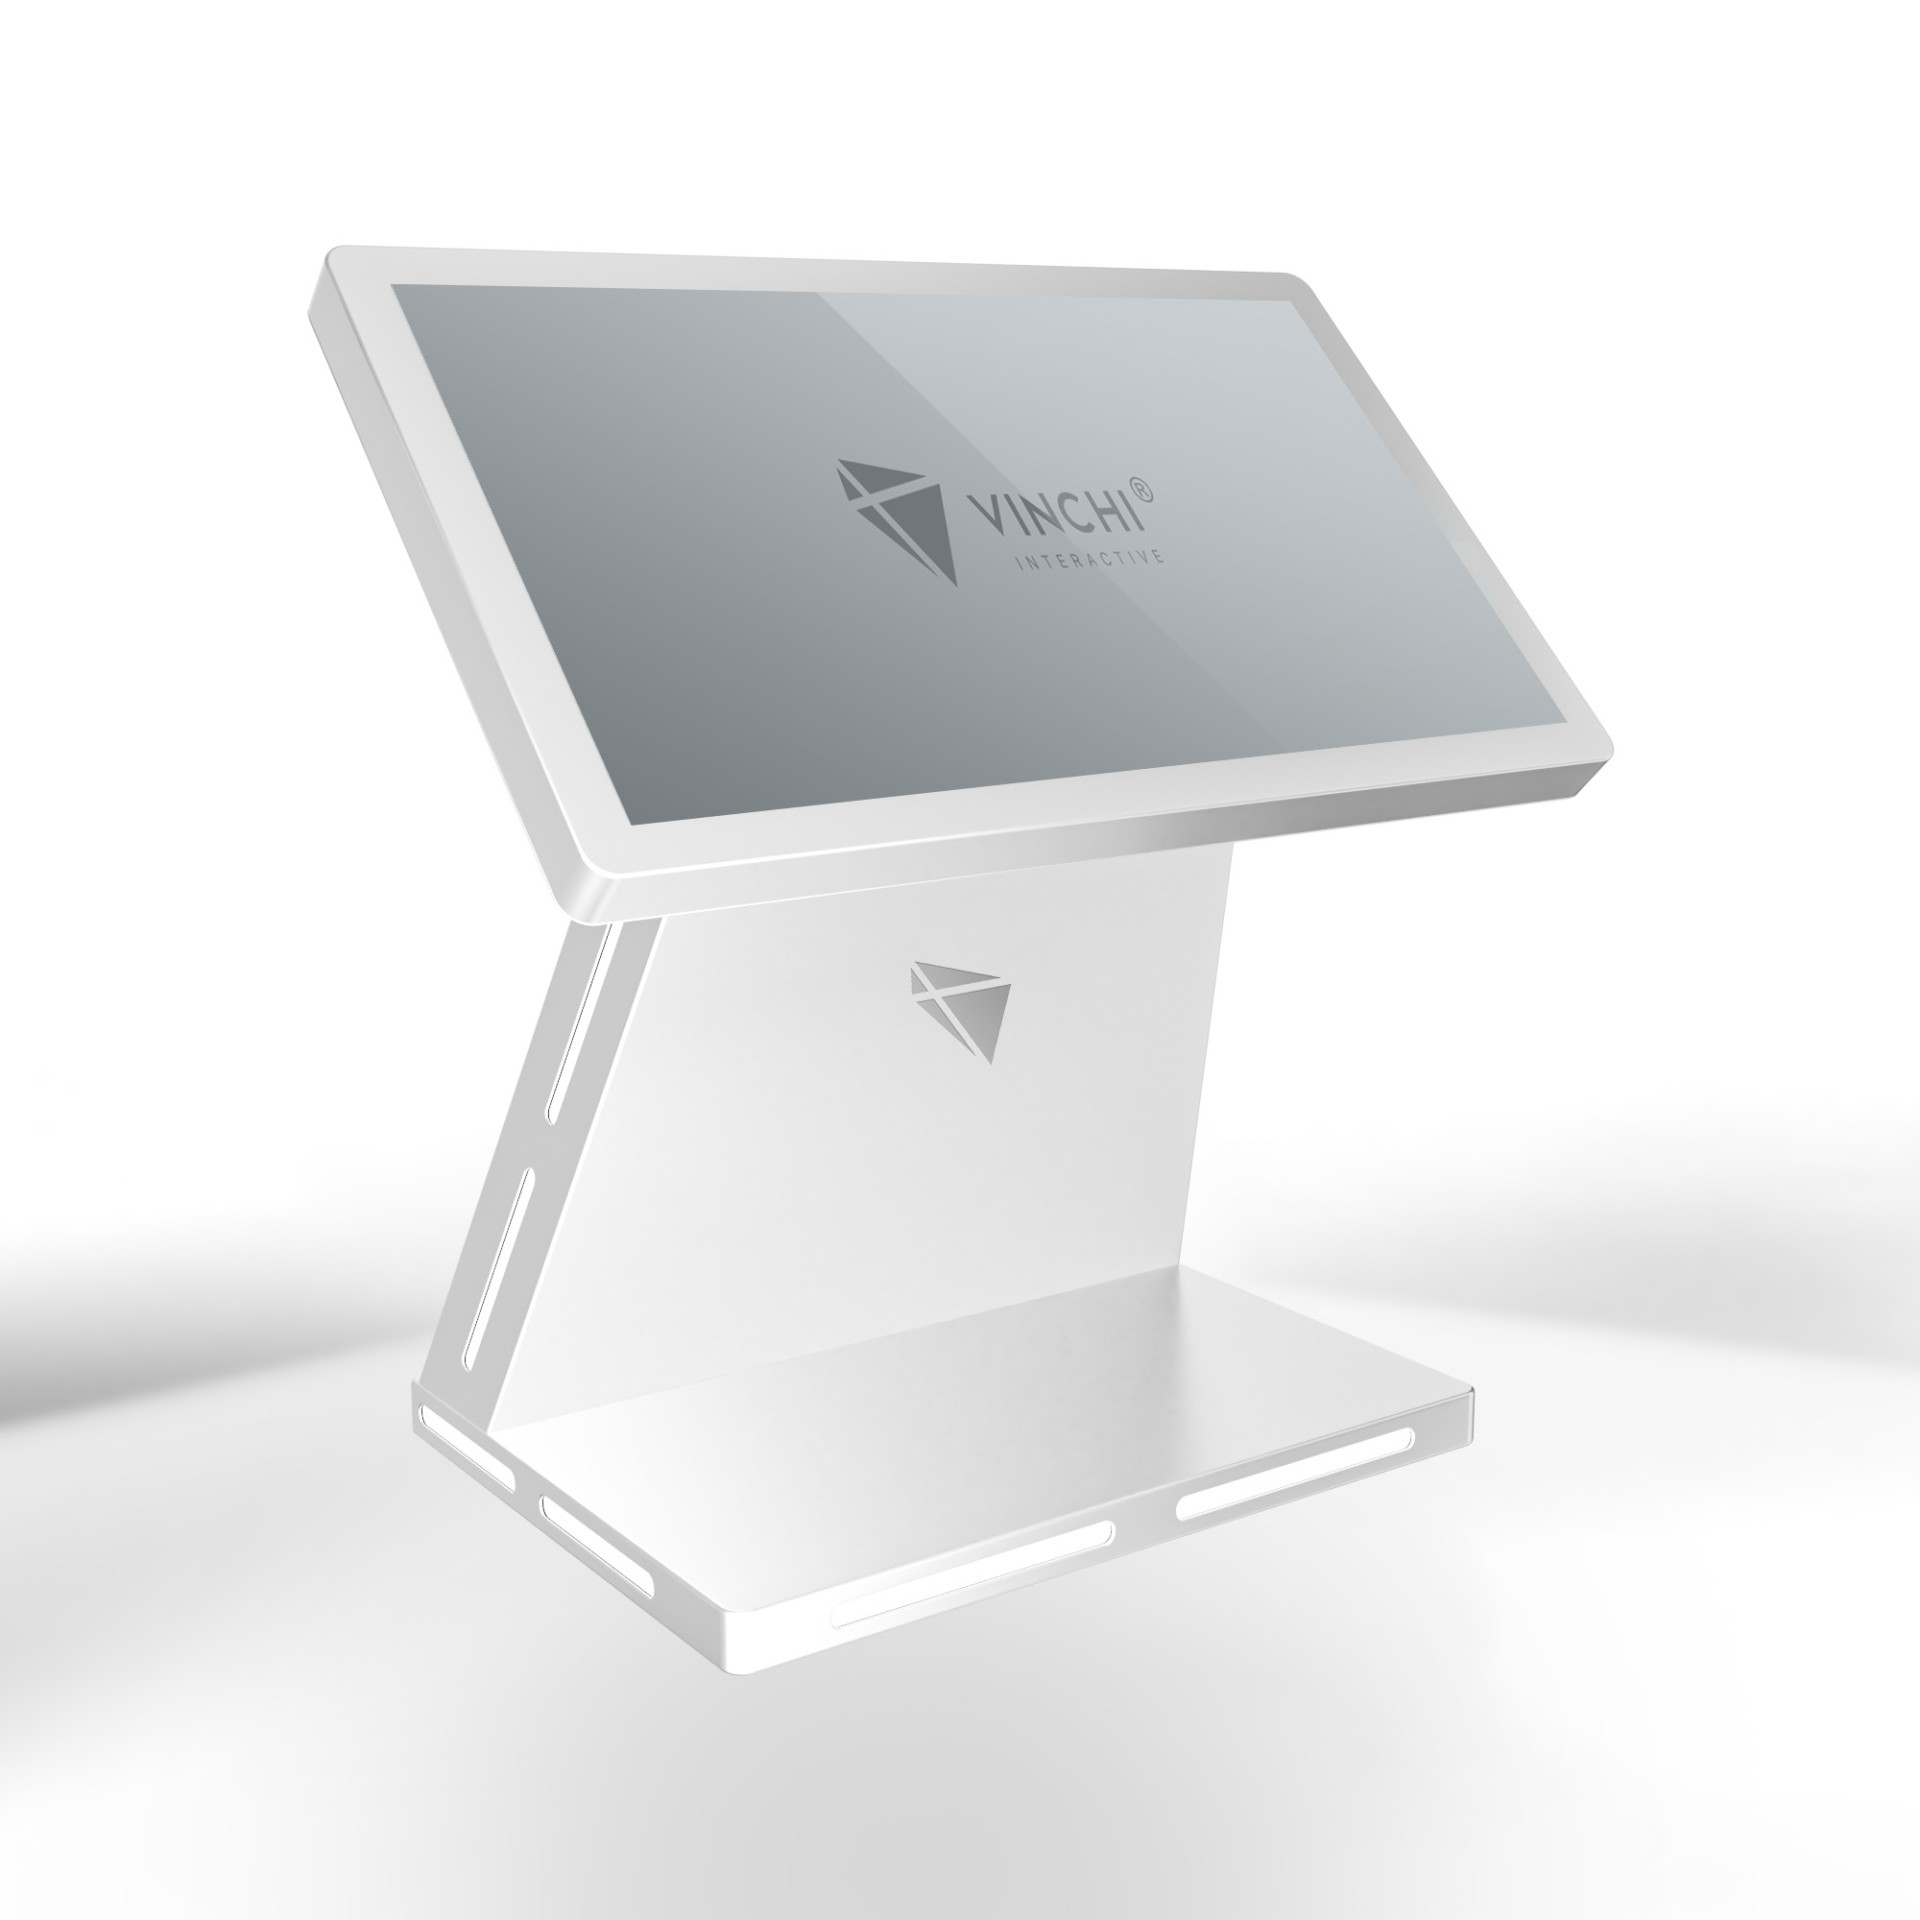 Интерактивный стол VINCHI 7 с диагональю 55 дюймов